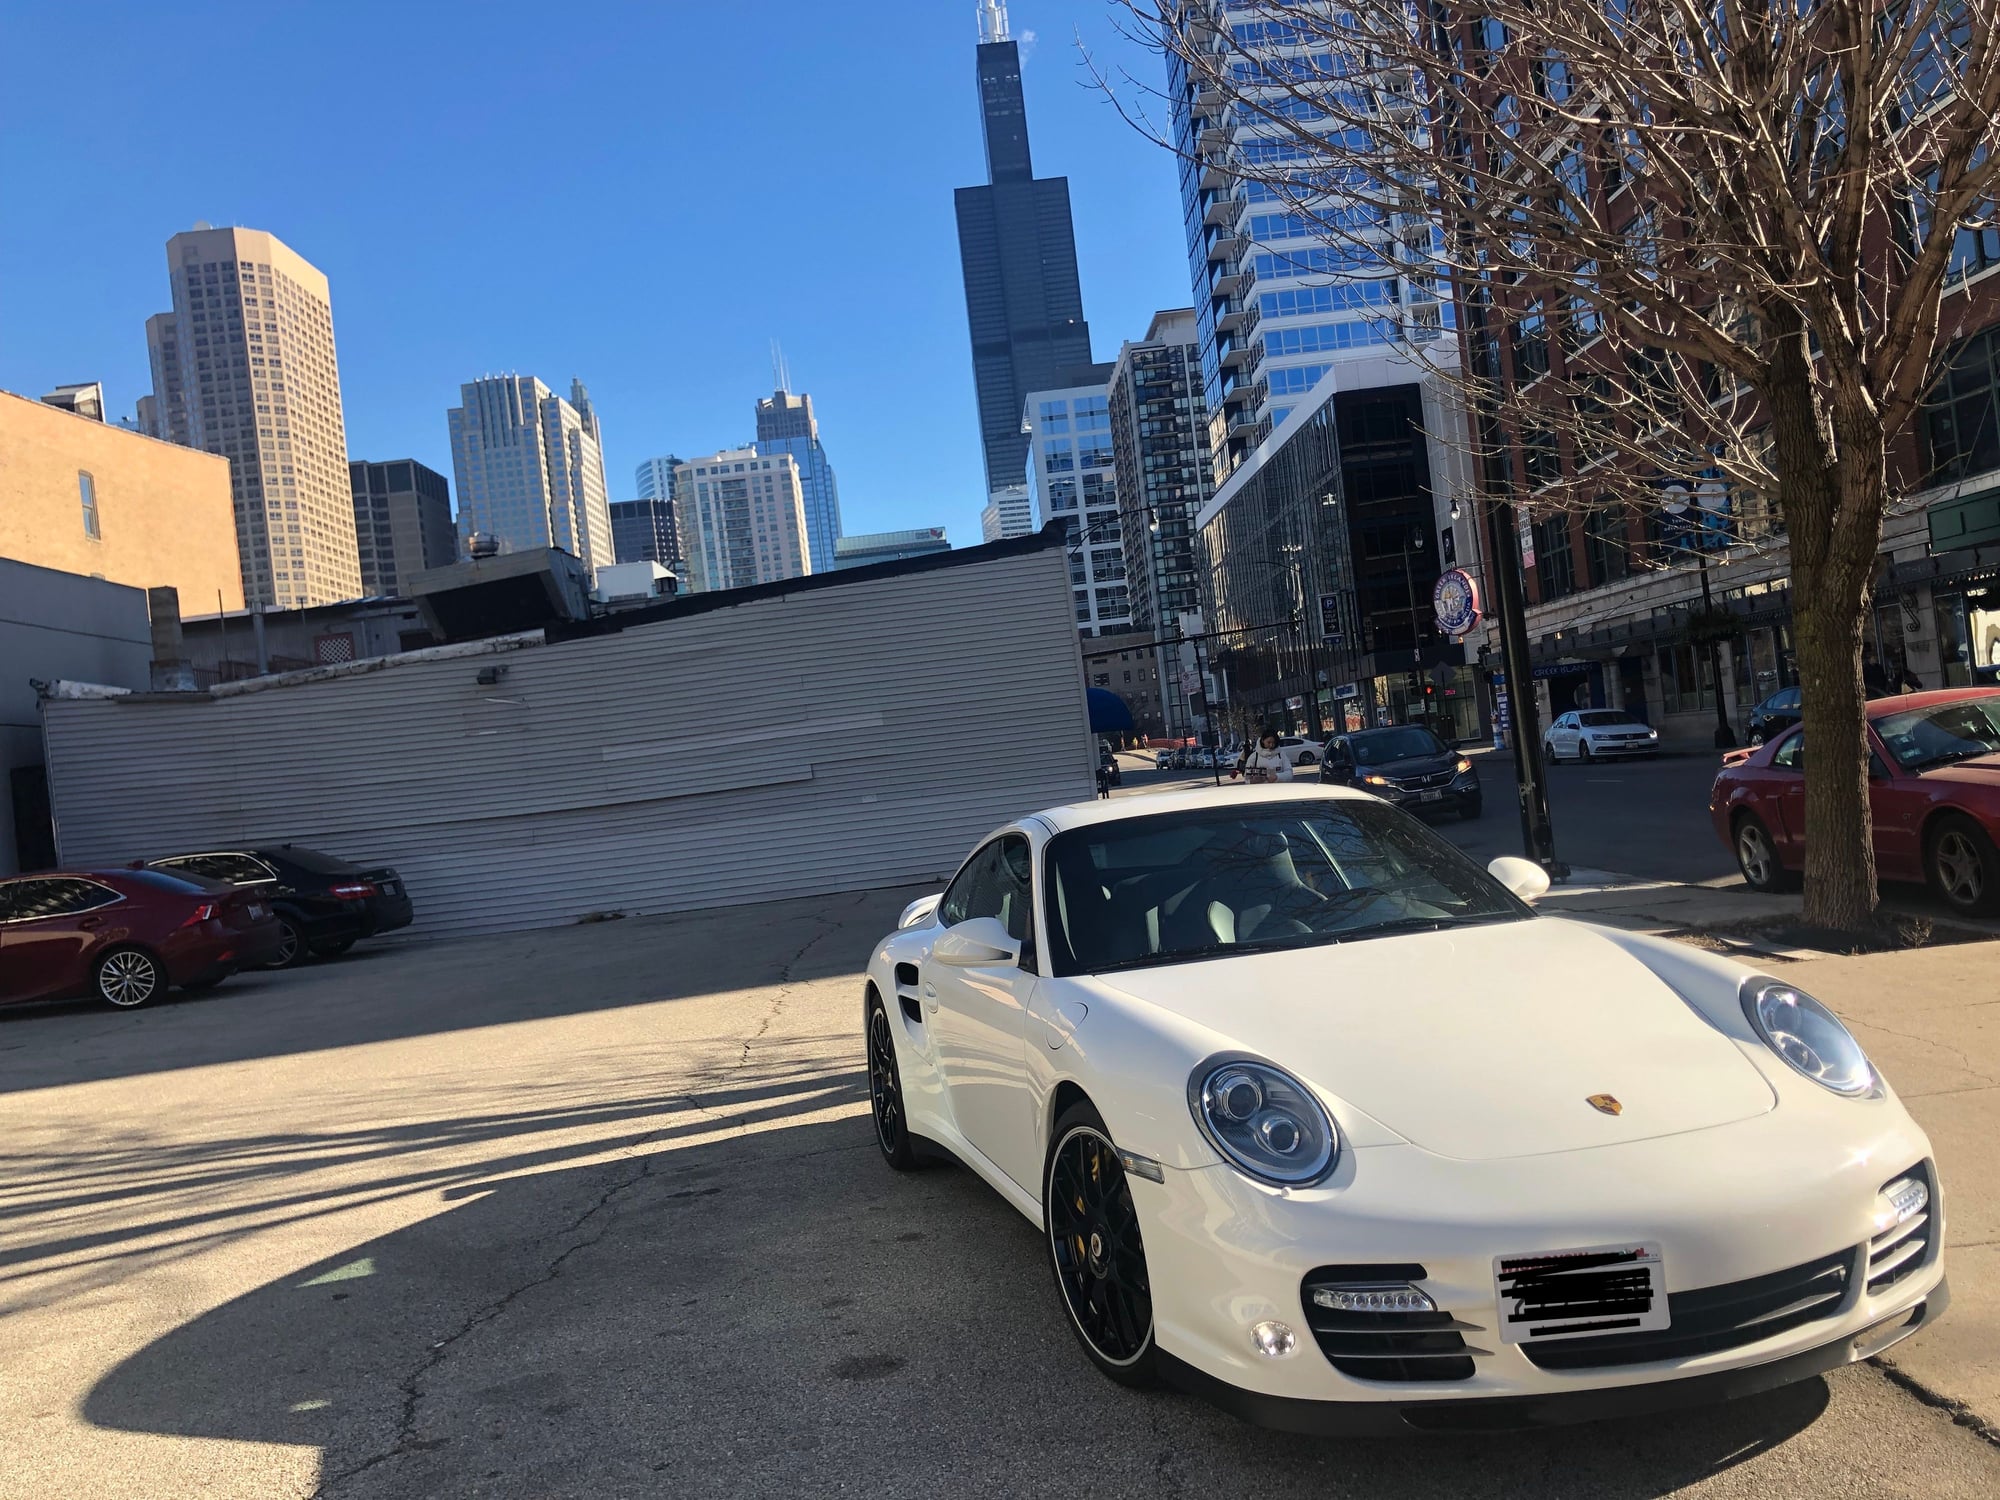 2012 Porsche 911 - 2012 Porsche 911 Turbo S - Carrara White on Black(w/ deviated stitch) -- STOCK - Used - VIN WP0AD2A92CS766600 - 19,500 Miles - 6 cyl - 4WD - Coupe - White - Chicago, IL 60607, United States